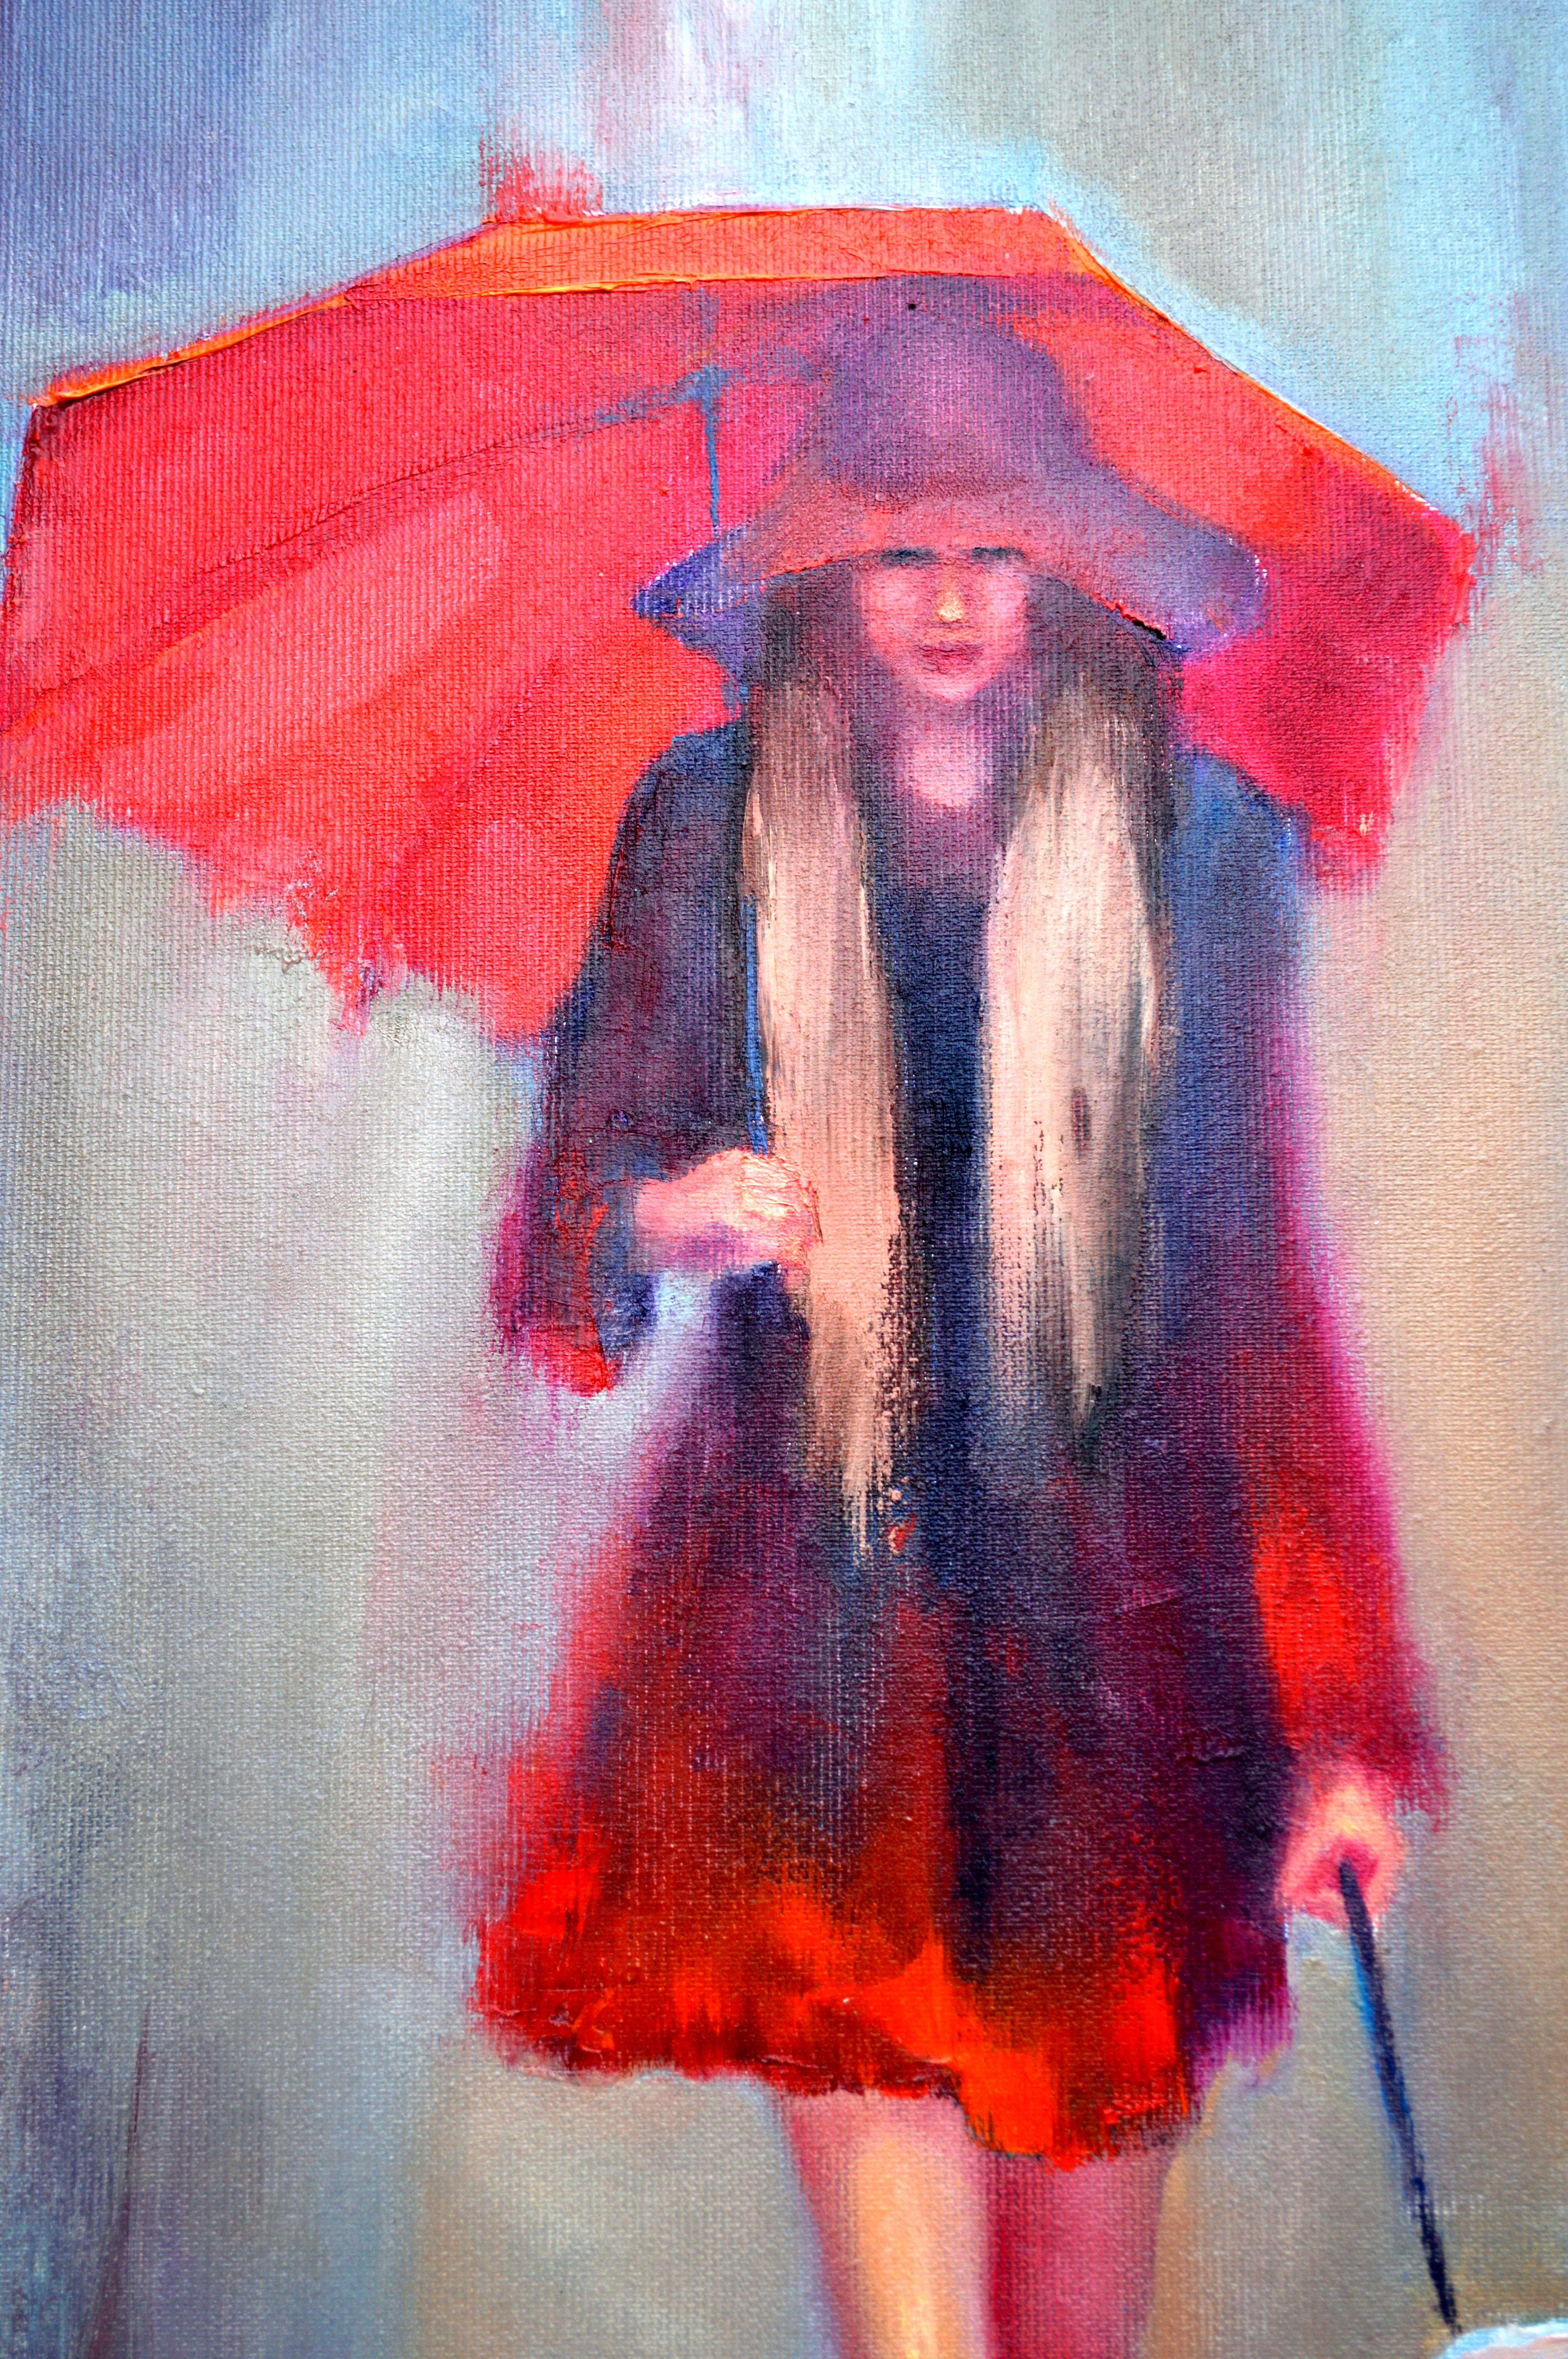 Dans cette peinture à l'huile, j'ai mélangé l'expressionnisme avec des touches d'impressionnisme et de réalisme pour capturer un moment de compagnie sereine au milieu de l'averse de la nature. Le parapluie rouge vif symbolise un rayon de chaleur,